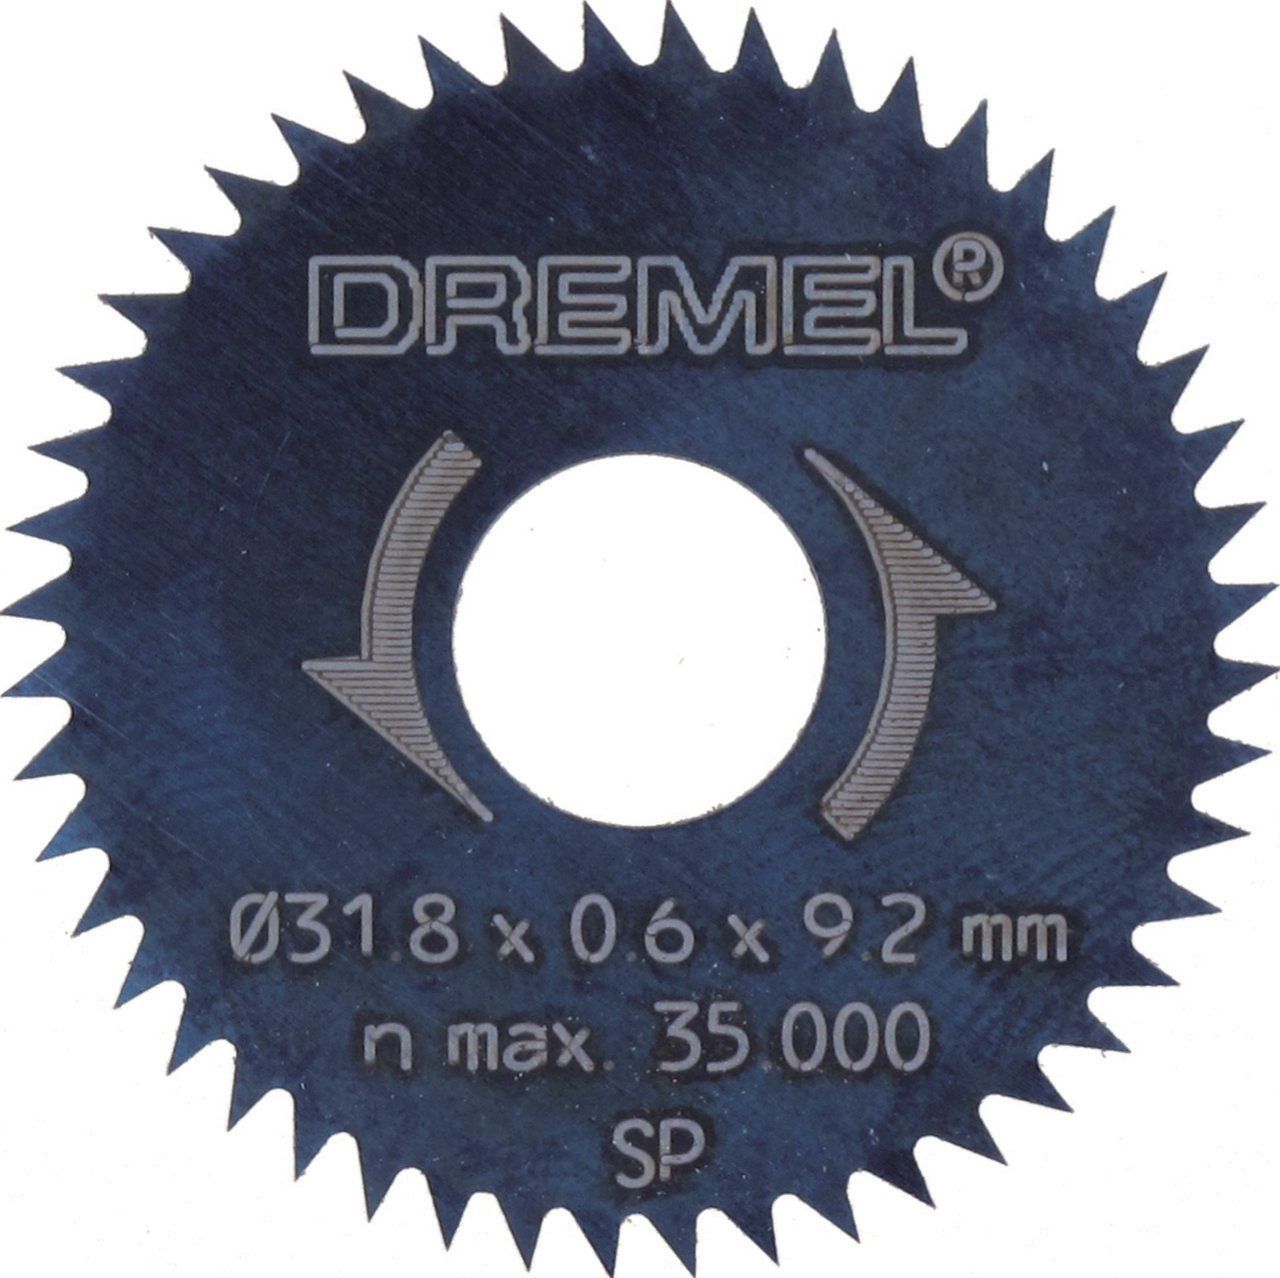 DREMEL® Yarık/Çapraz Kesim Bıçağı 31,8 mm (546)